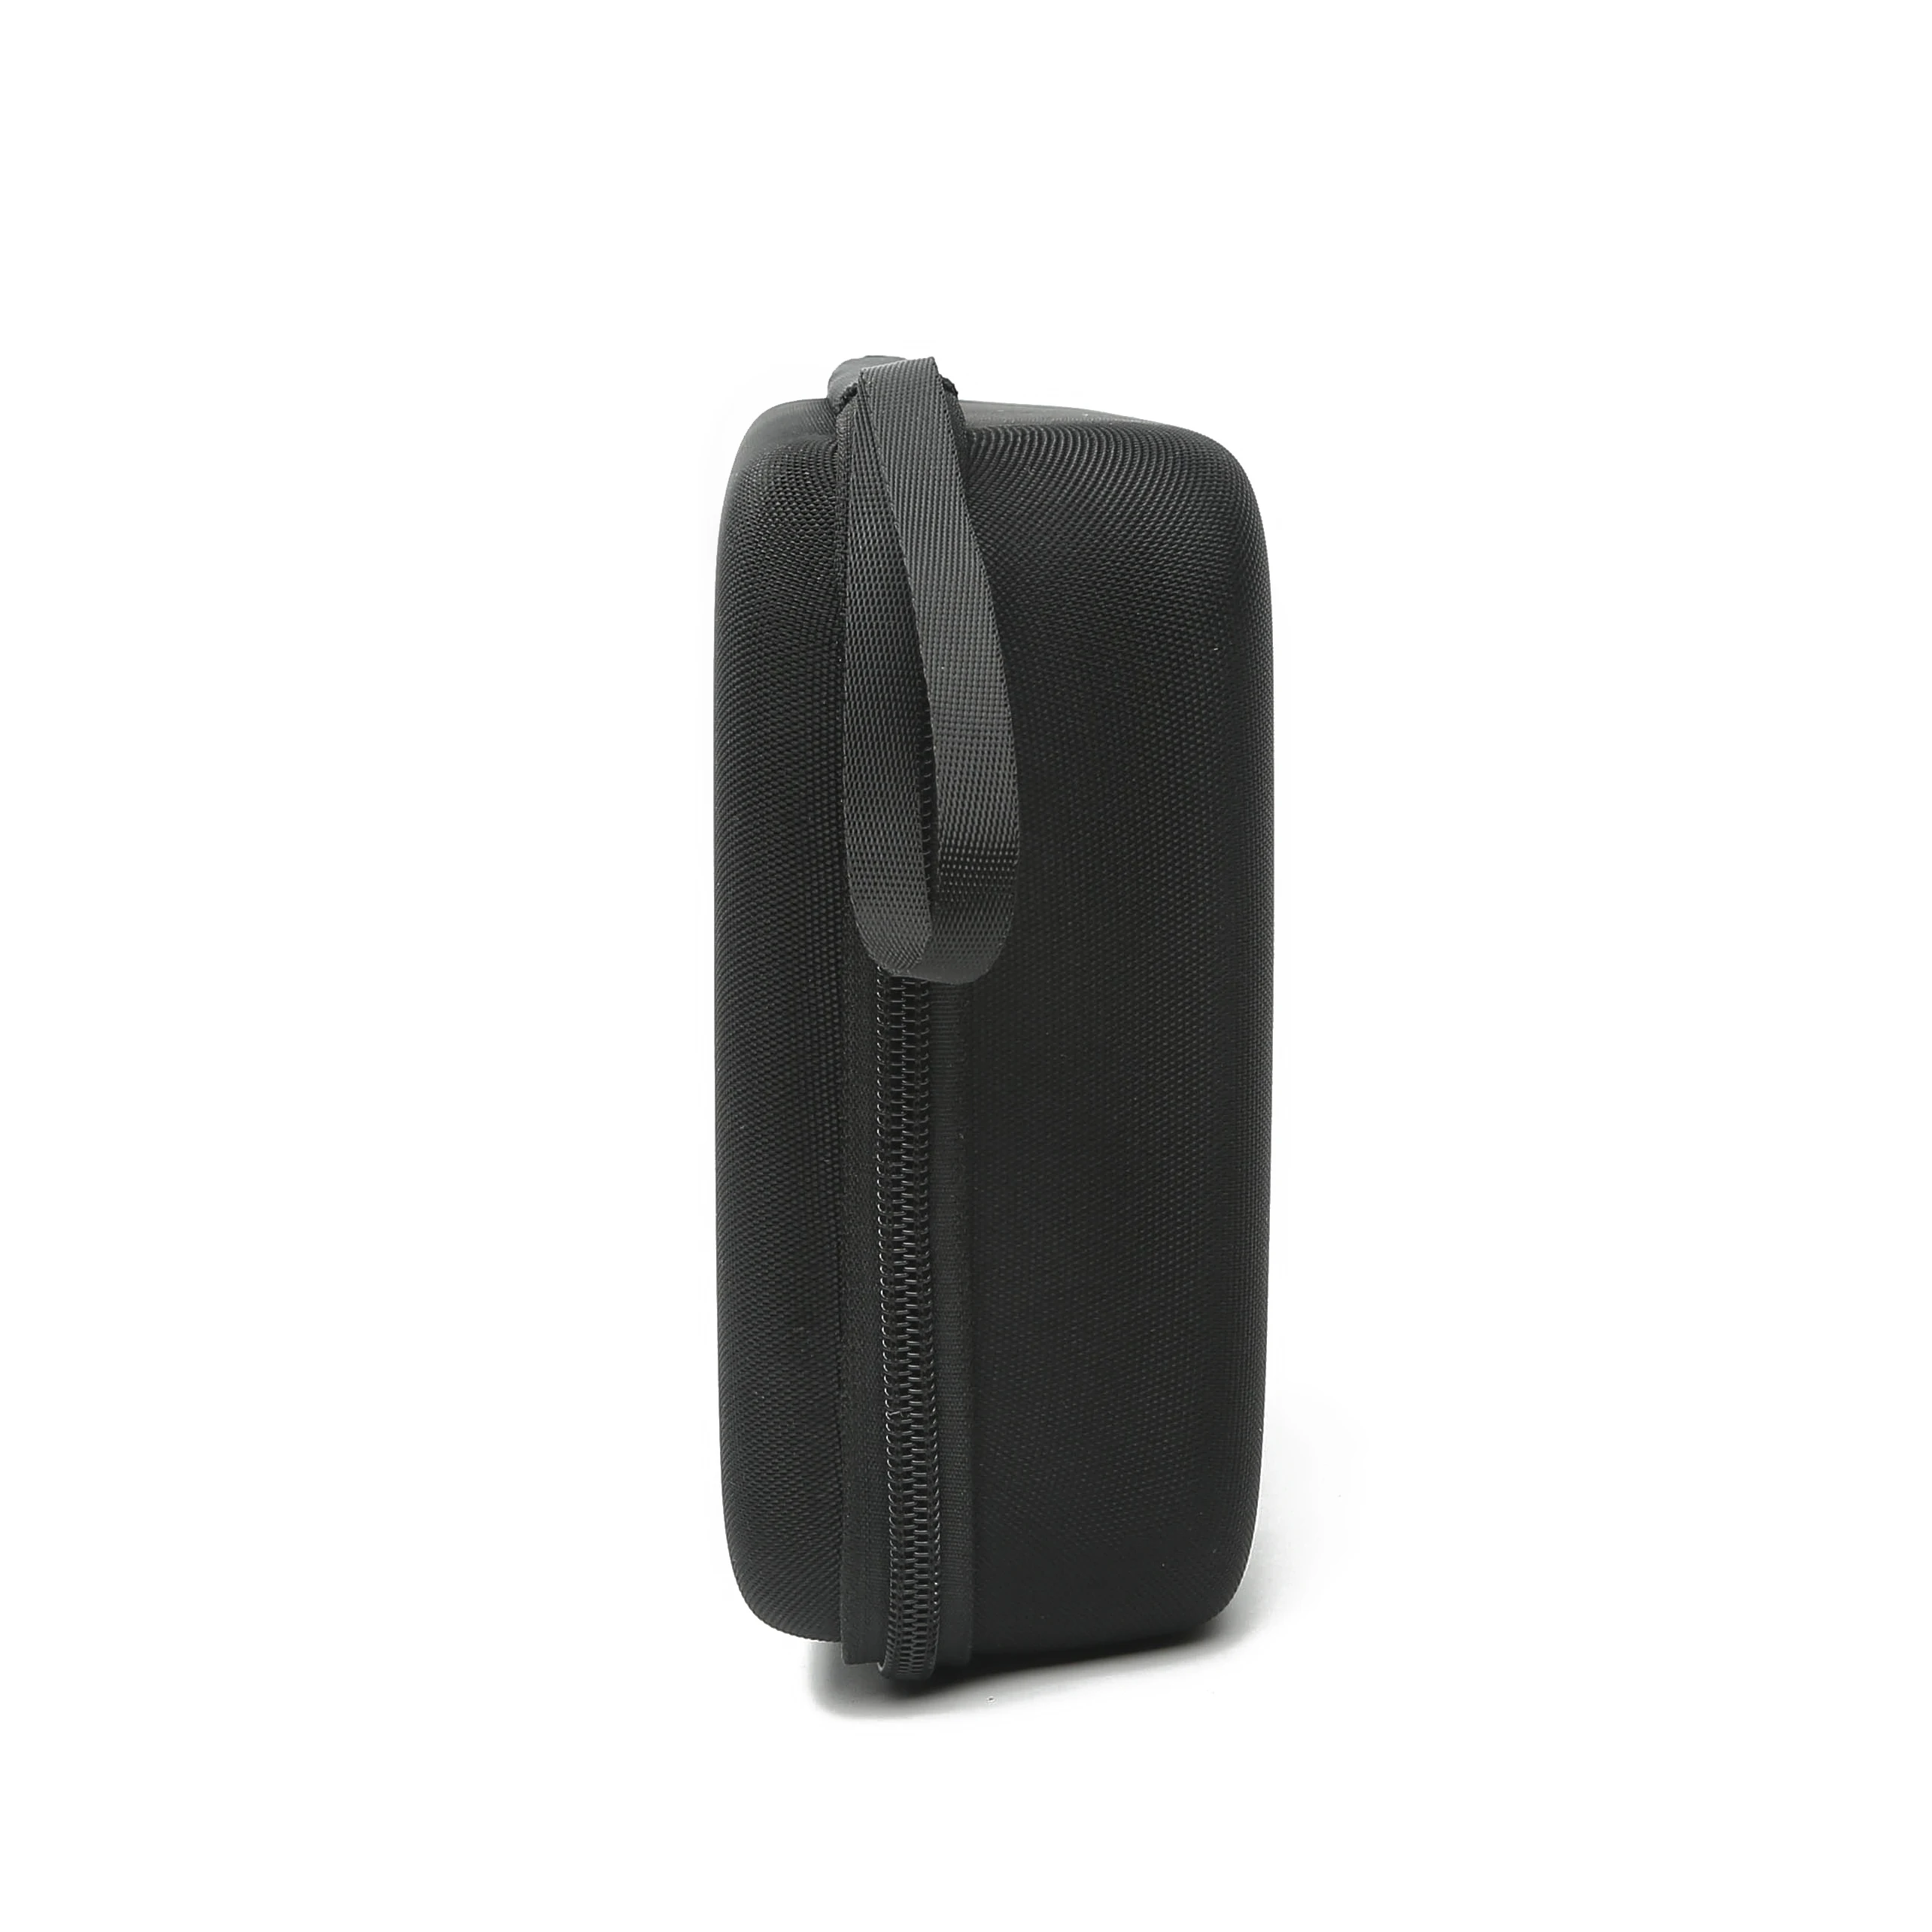 Чехол для хранения для DJI Osmo Mobile 3 ручной карданный чехол для хранения карданный портативный ящик для DJI Osmo Mobile 3 Аксессуары